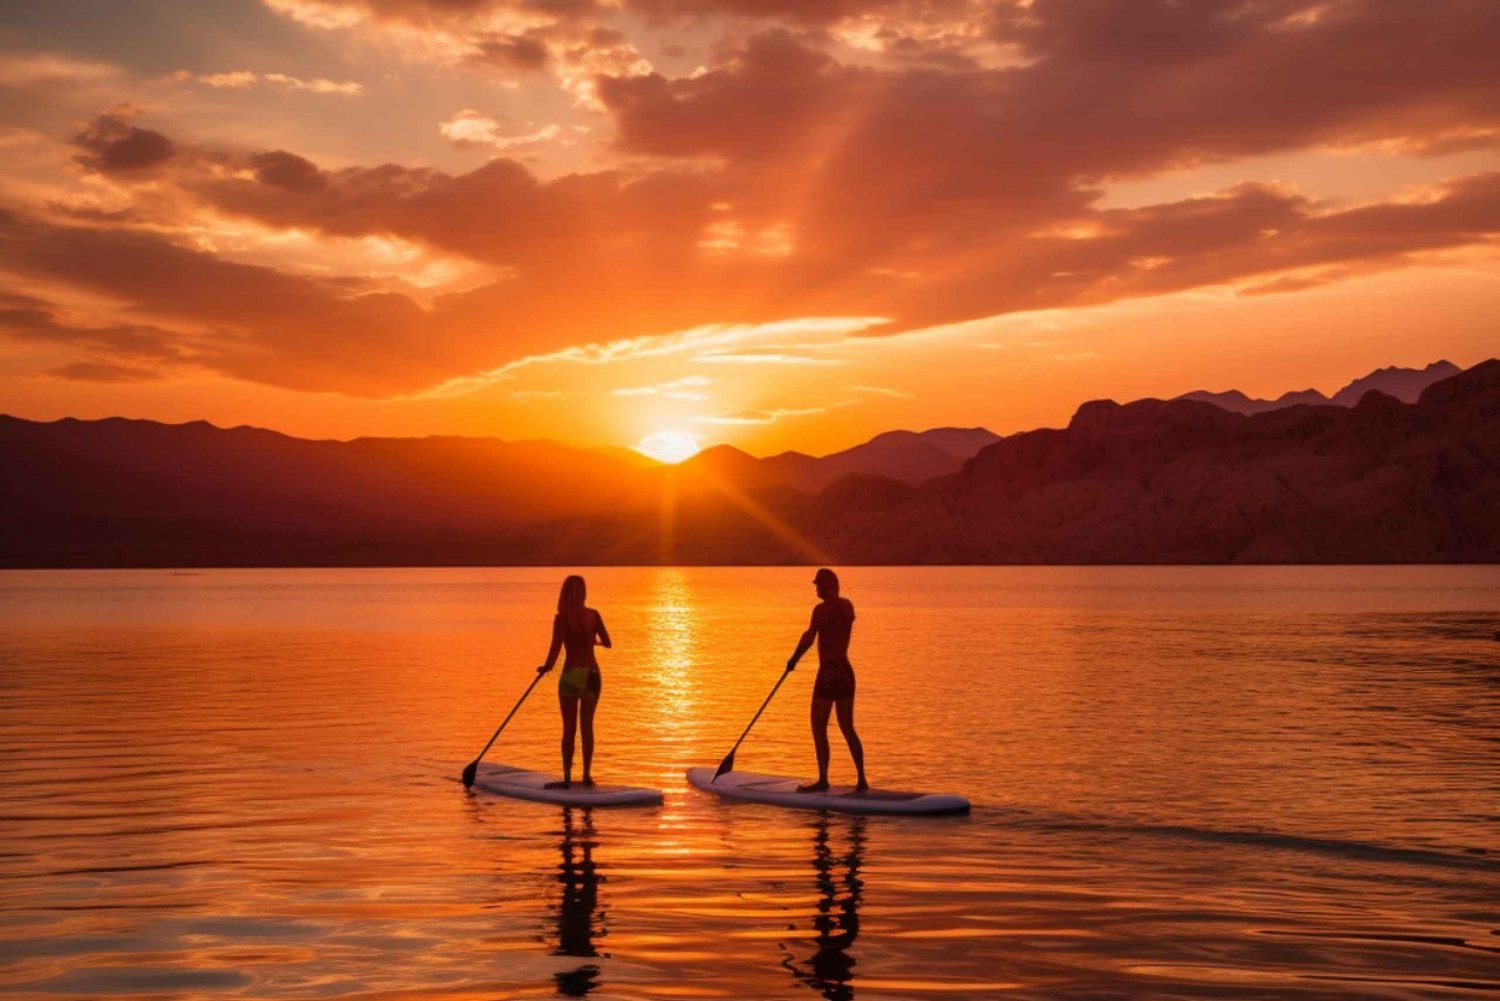 Las Vegas: Sunset Paddleboarding at Lake Mead